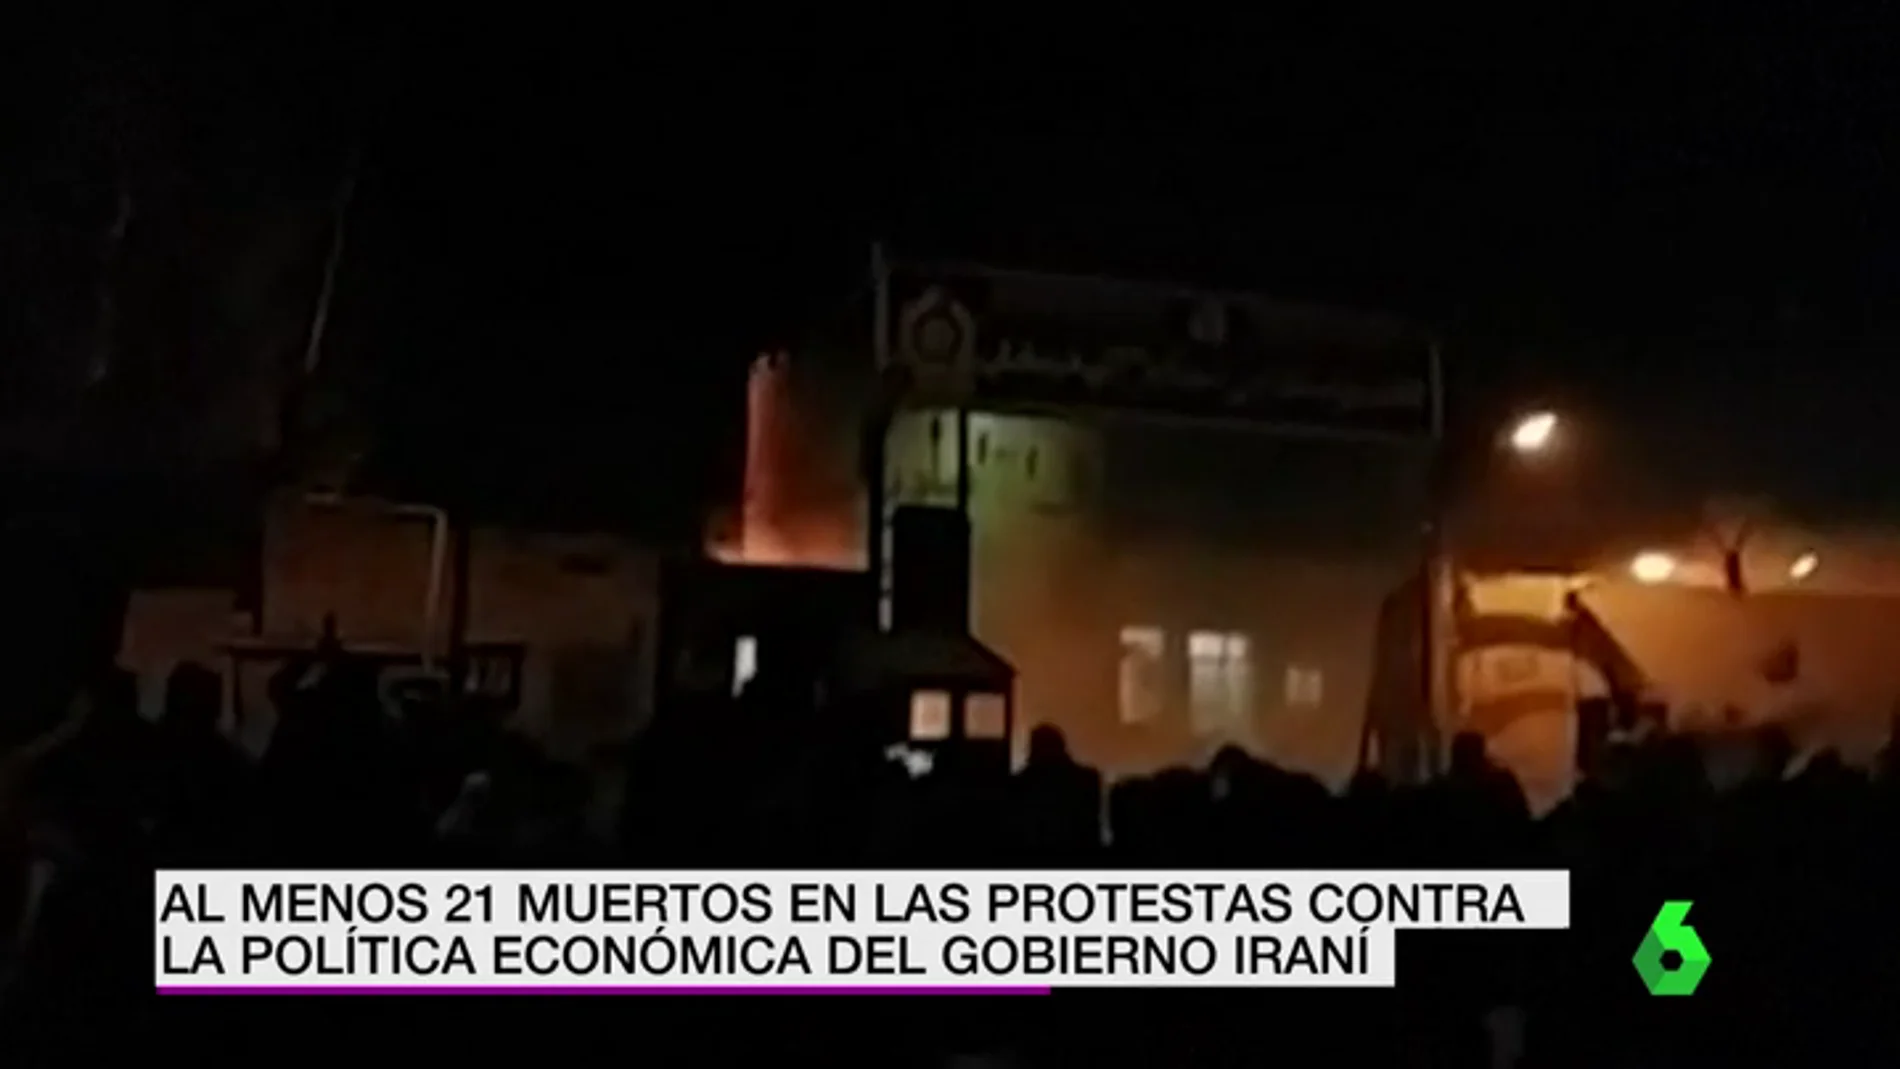  Ascienden a 21 muertos en las protestas contra la política económica del gobierno iraní​